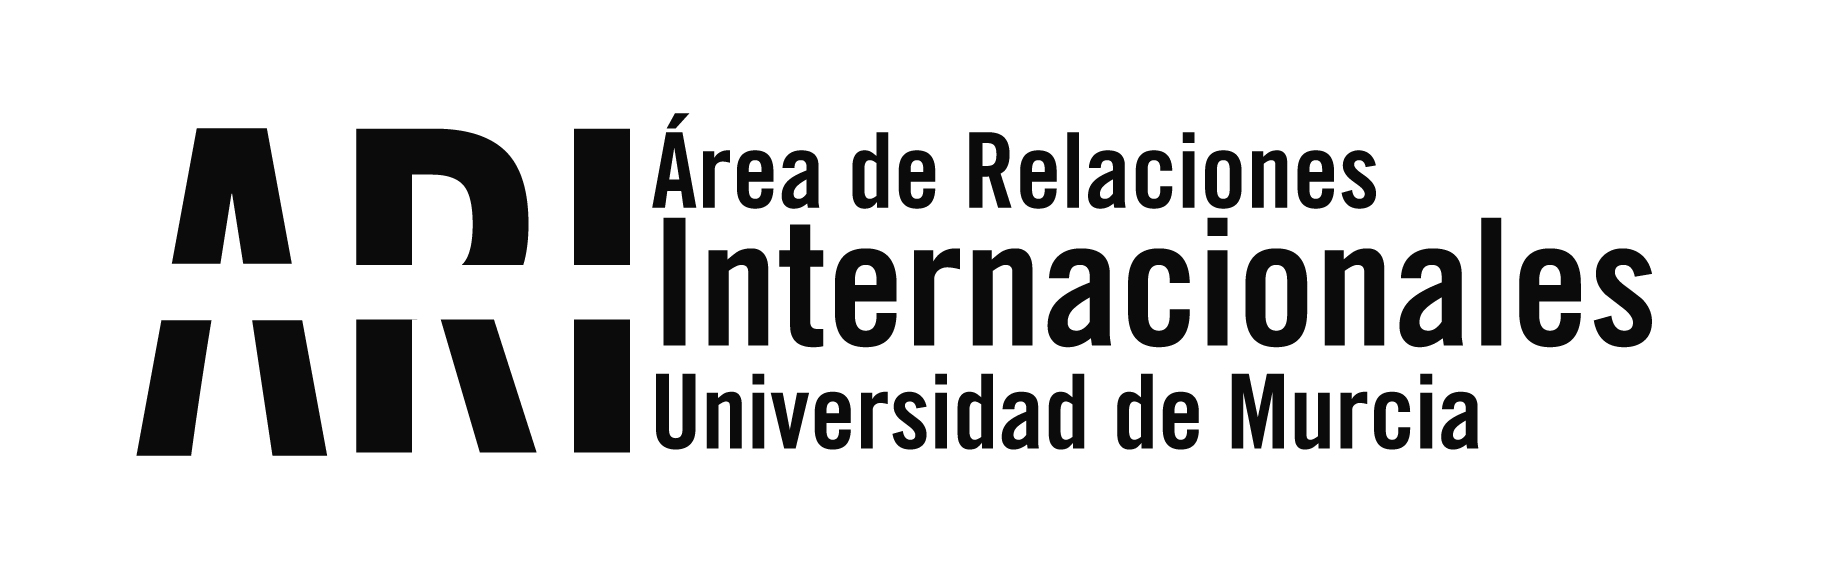 Participantes de la EAIE 2017 de Sevilla visitan la UM - Área de Relaciones Internacionales